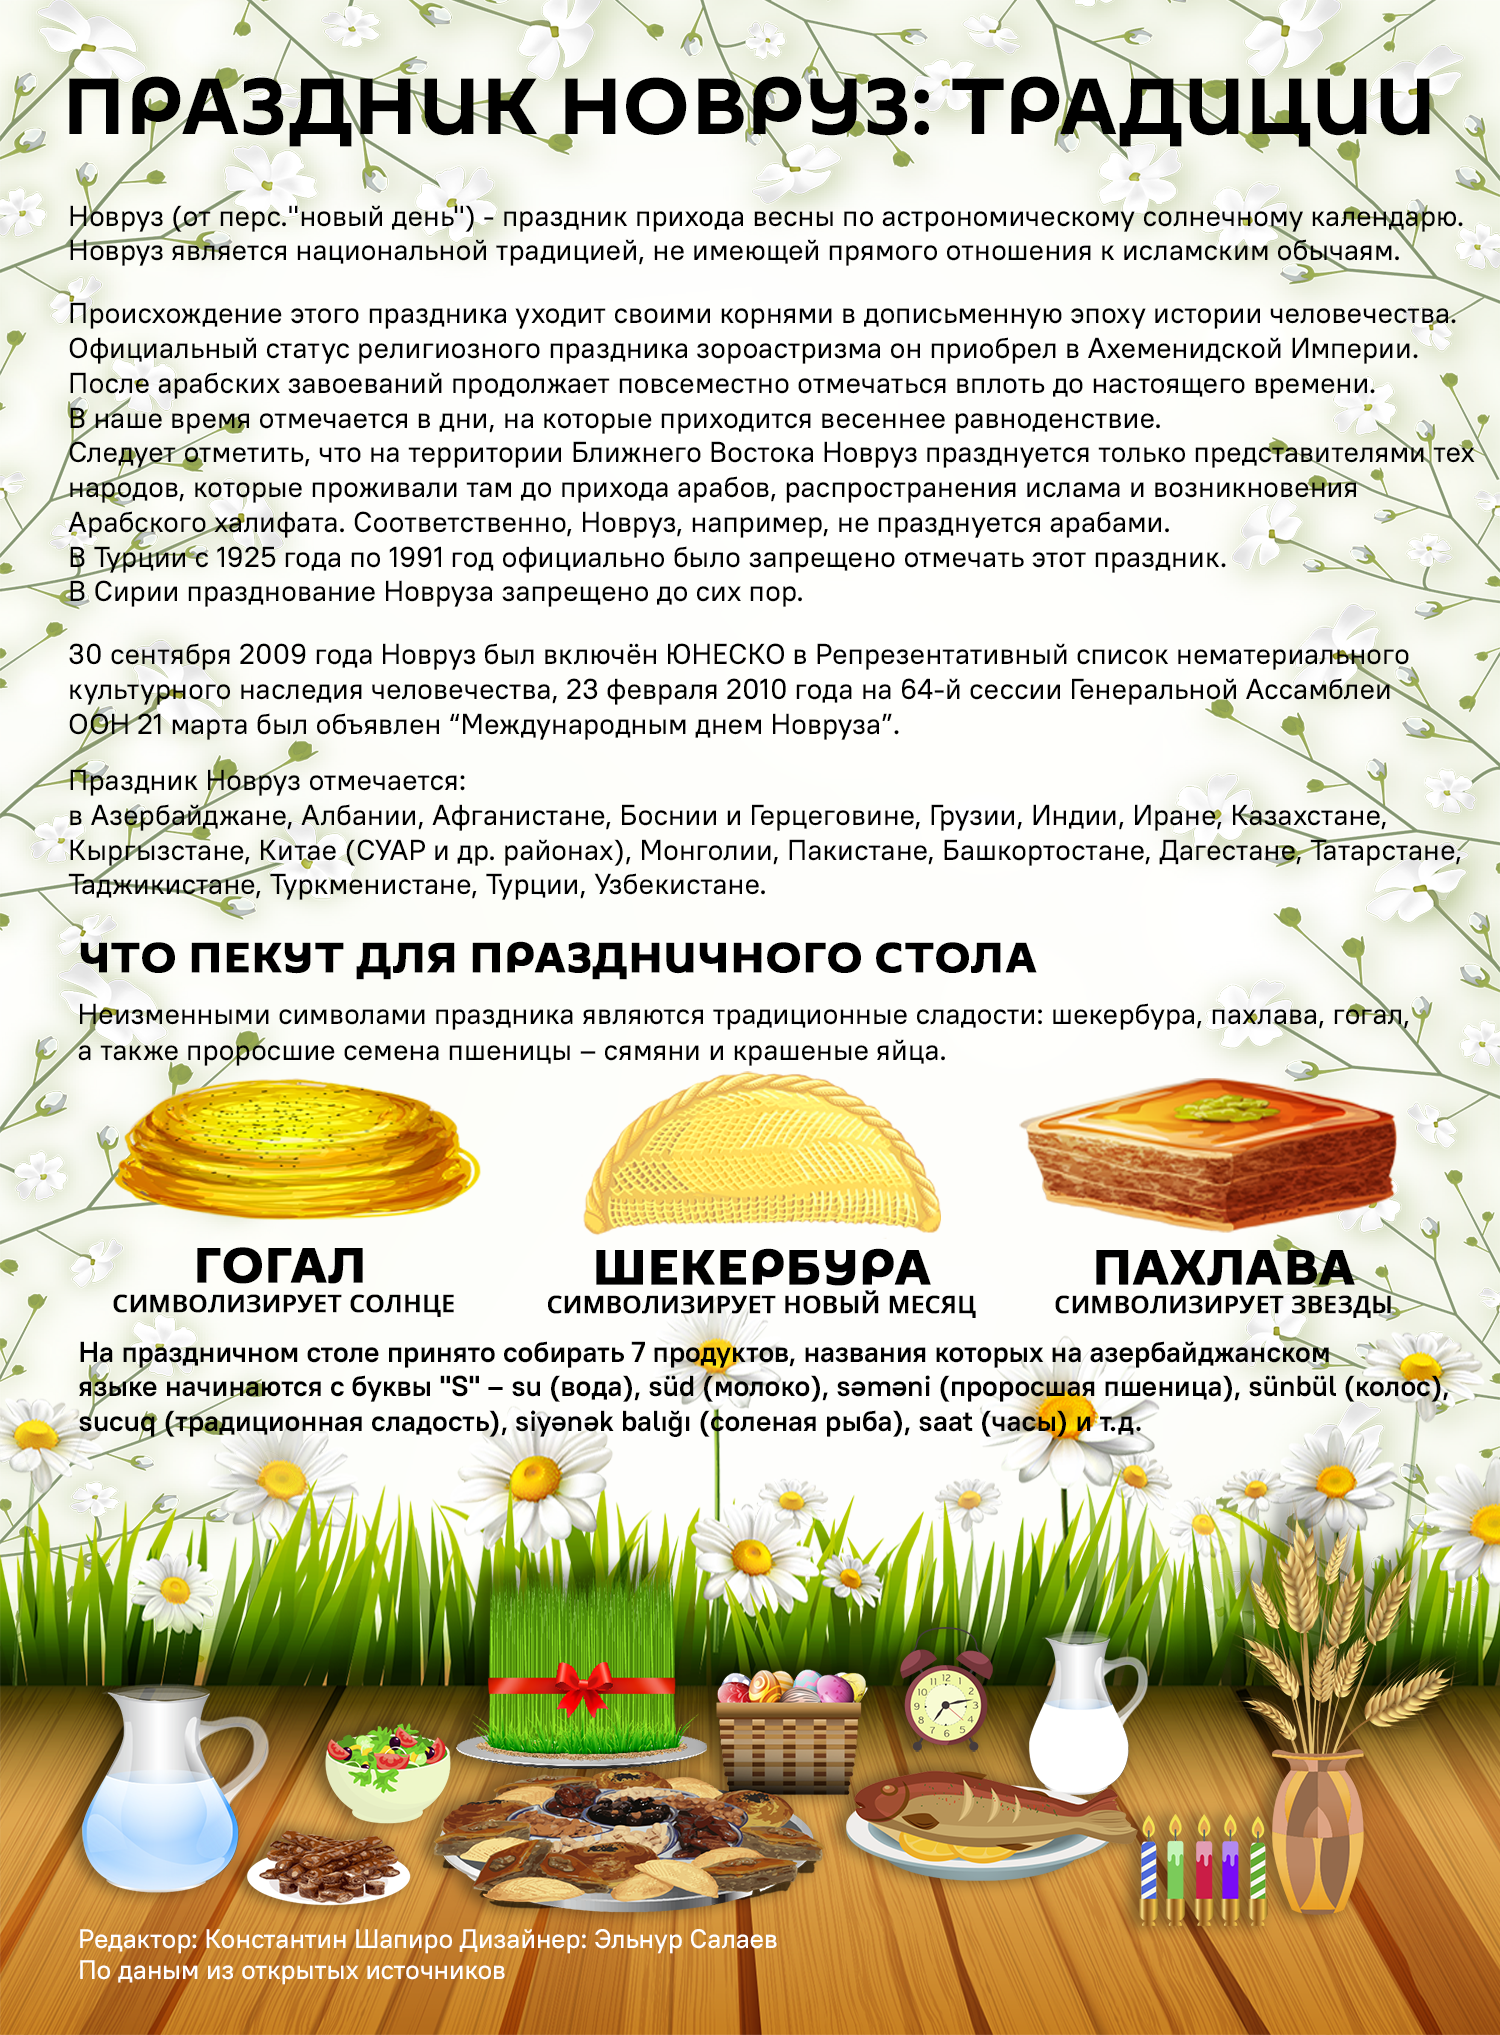 Инфографика: Праздник Новруз - традиции - Sputnik Азербайджан